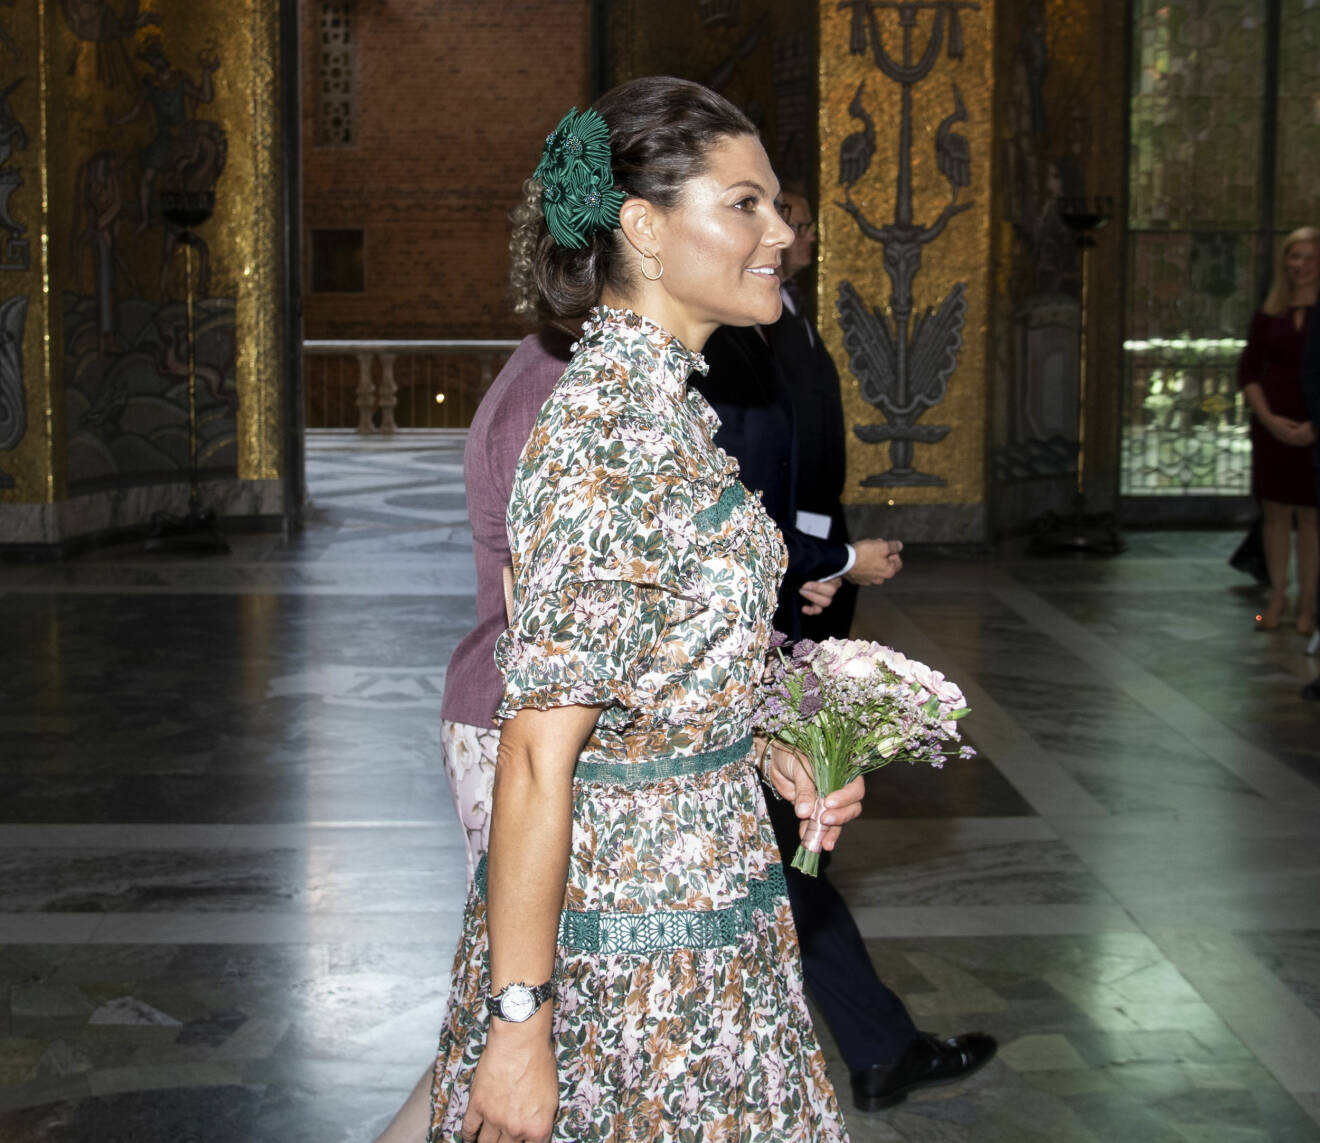 Kronprinsessan Victoria i Stockholms stadshus i klänning från By Malina